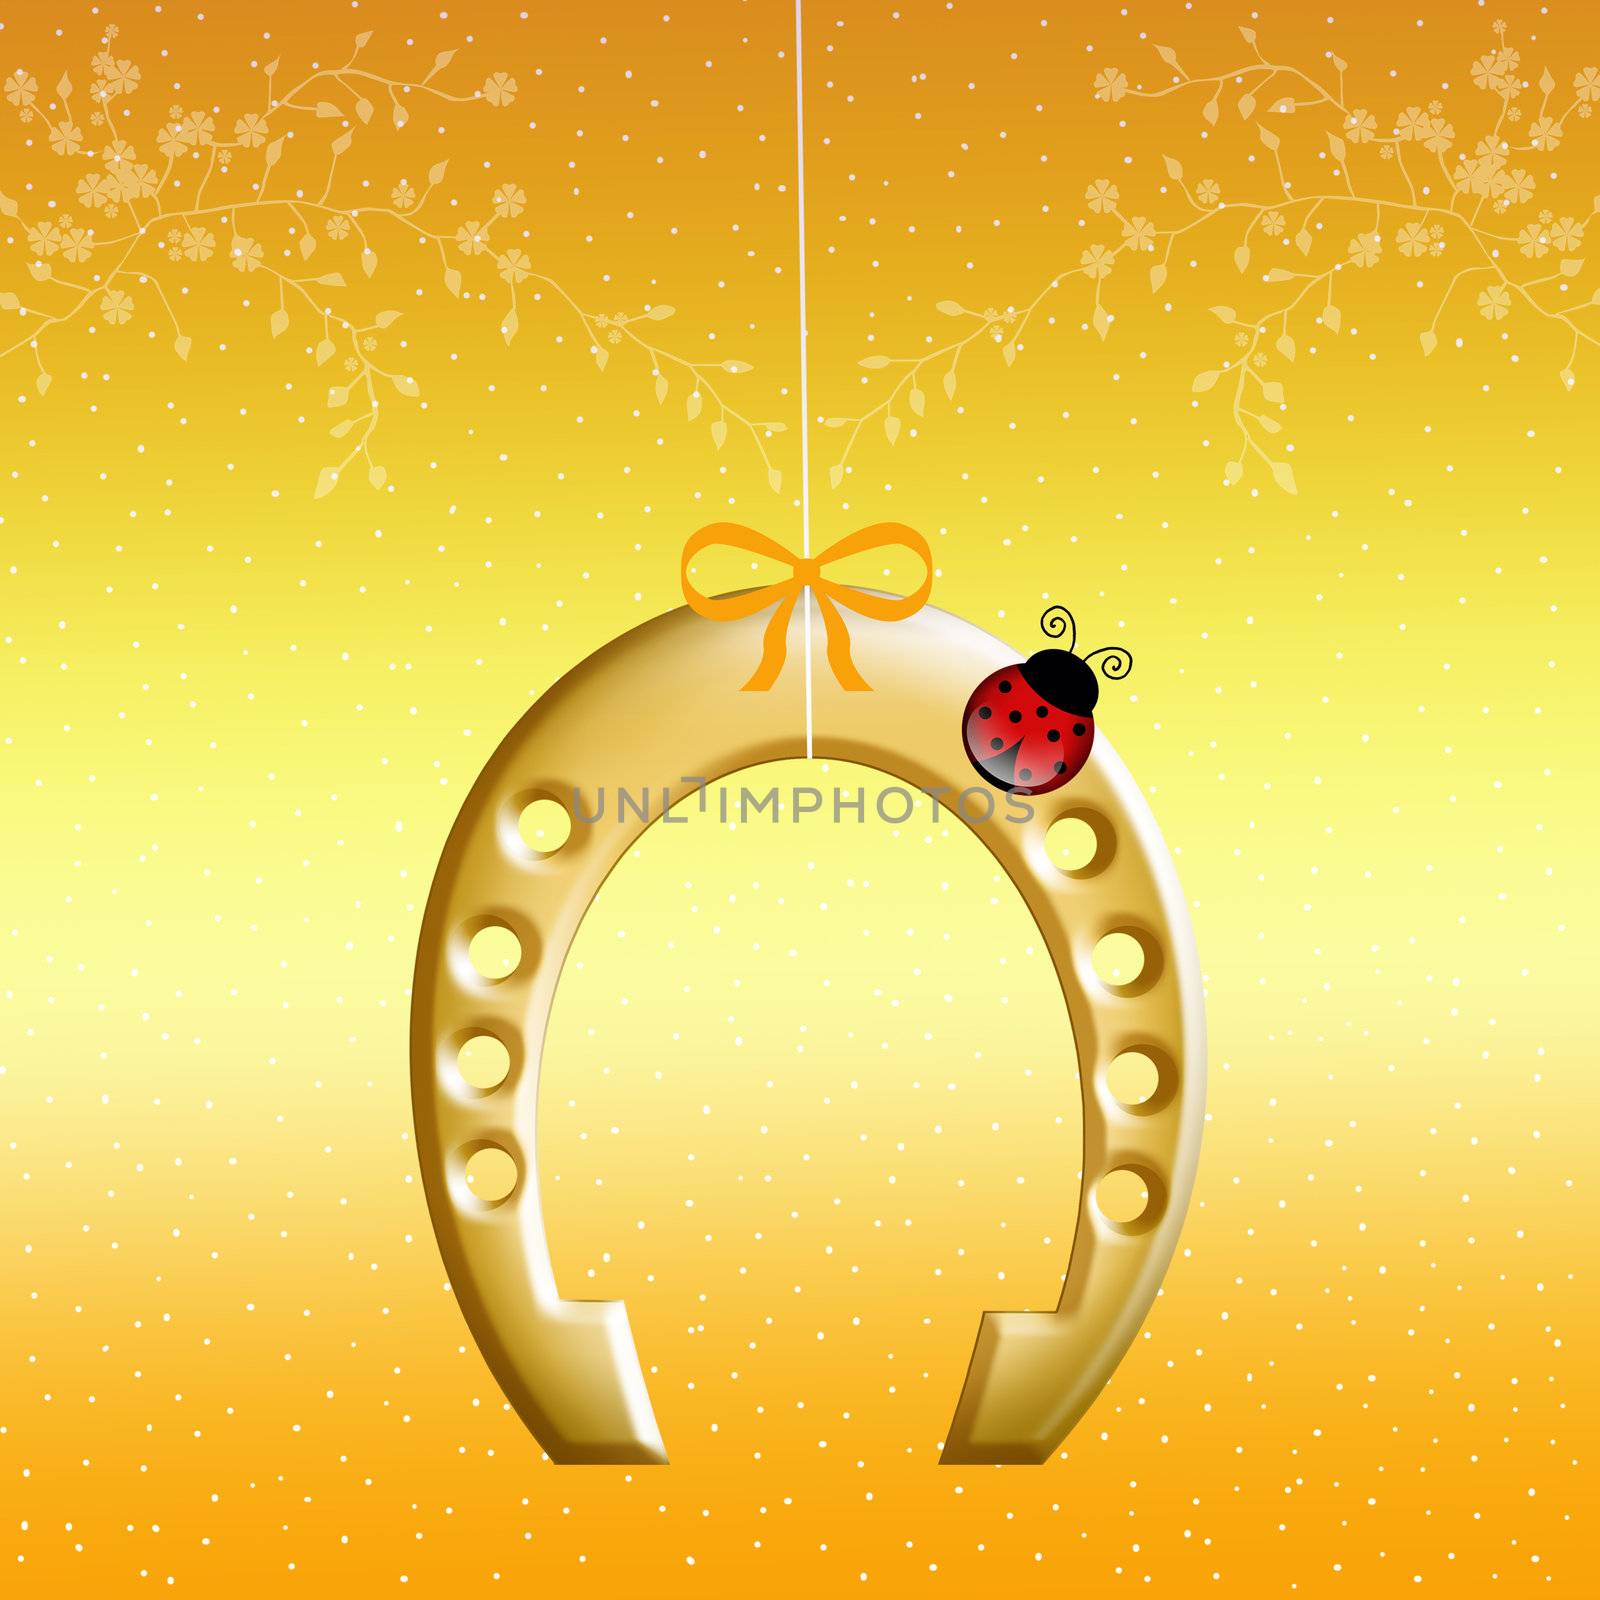 illustration of horseshoe with ladybug for luckiness